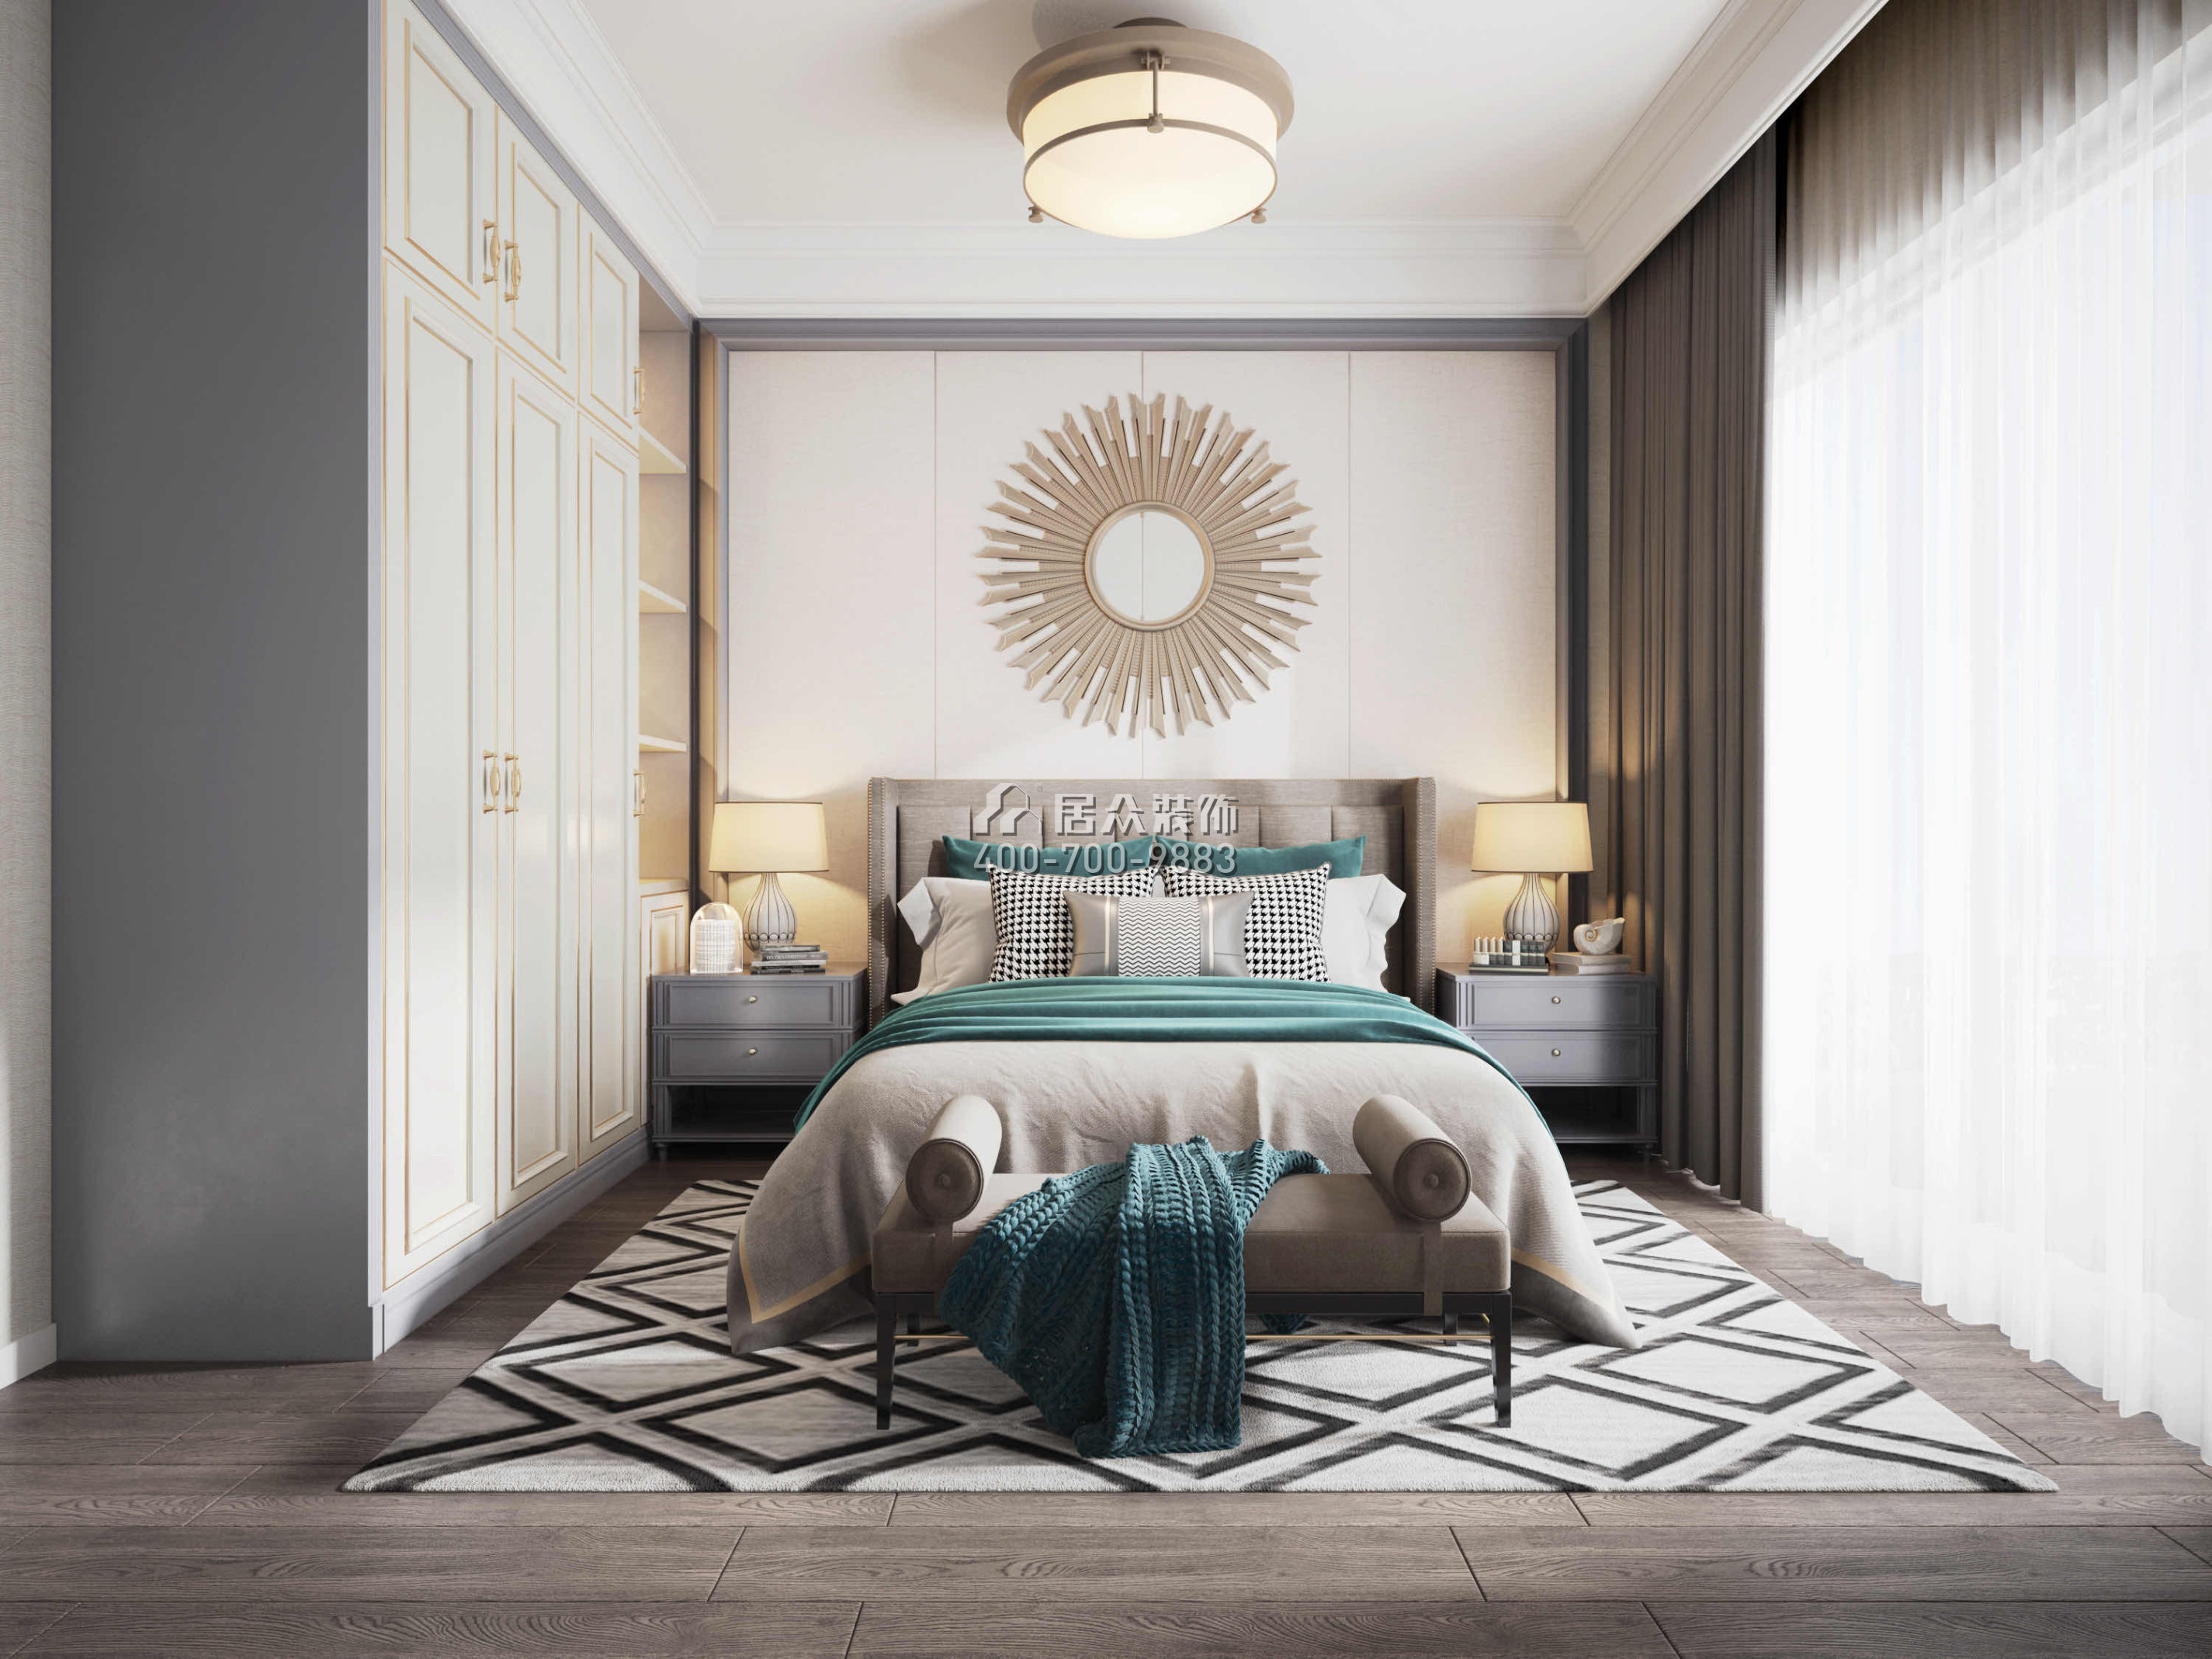 万科金域蓝湾98平方米美式风格平层户型卧室装修效果图